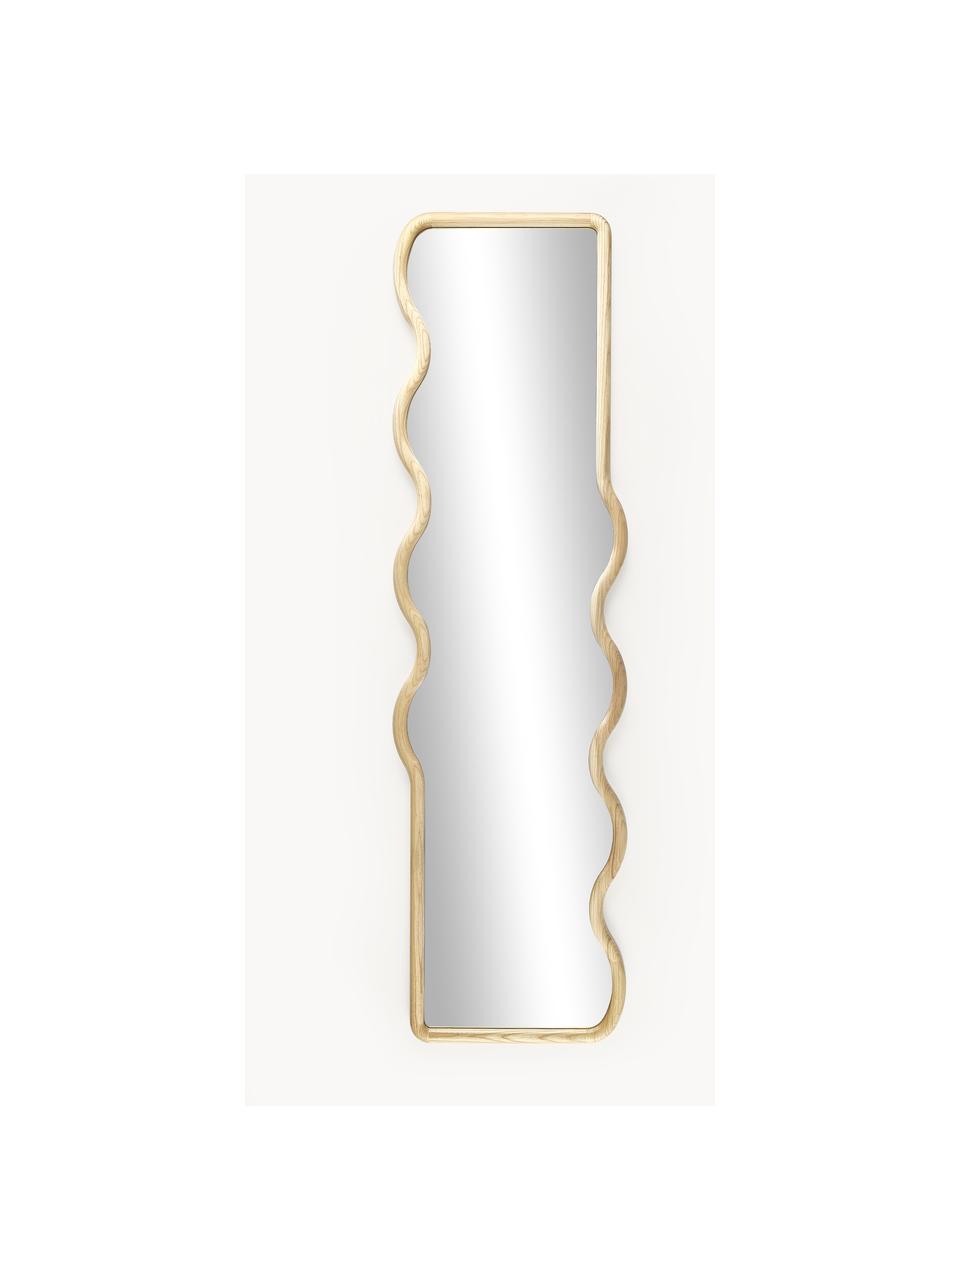 Wellenförmiger Wandspiegel Stream aus Holz, Rahmen: Eschenholz, Spiegelfläche: Spiegelglas, Rückseite: Mitteldichte Holzfaserpla, Beige, B 50 x H 175 cm